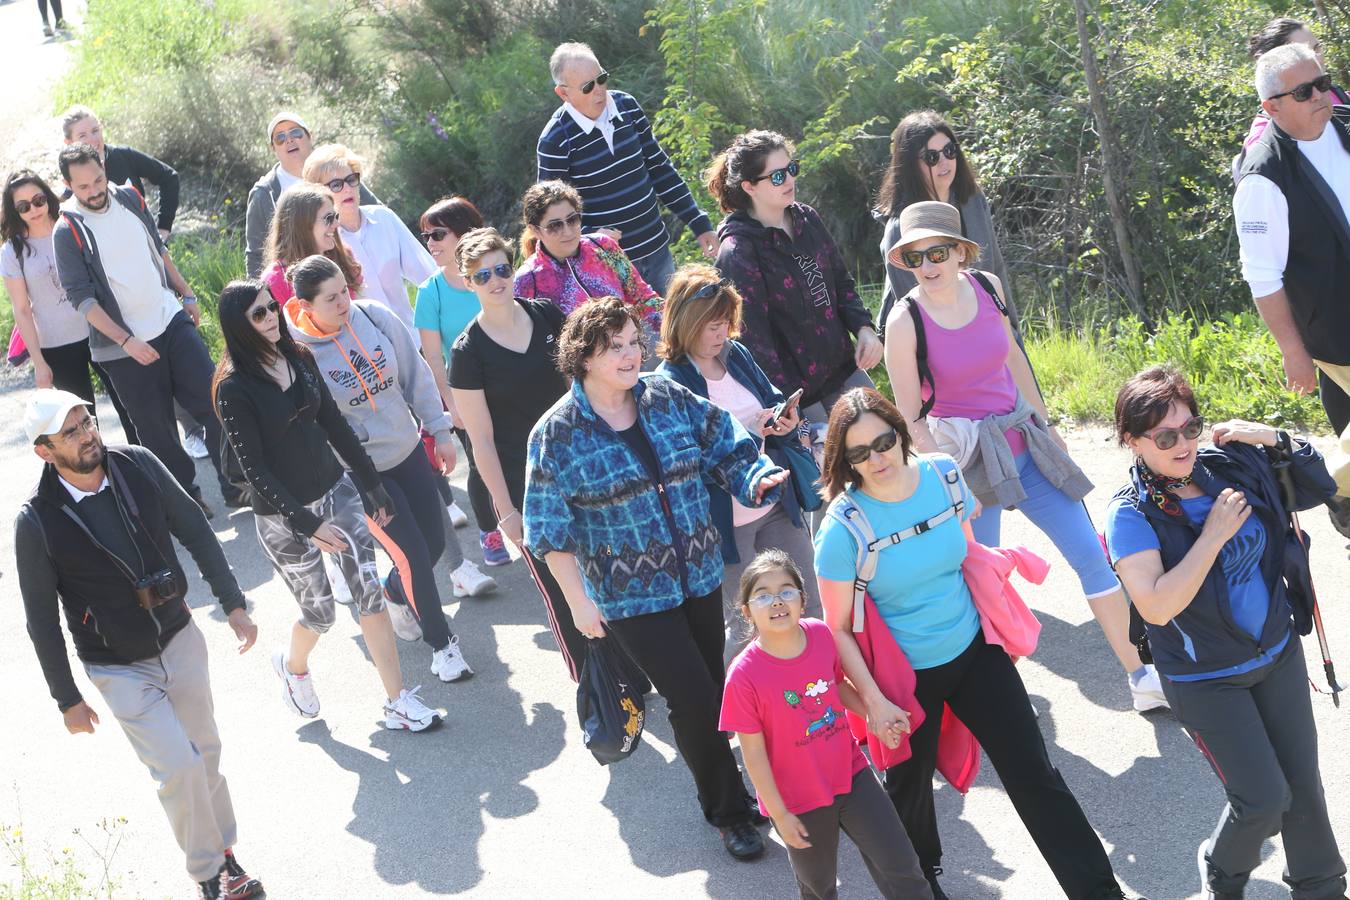 1.200 personas participaron en el útimo Paseo Saludable, un recorrido de doce kilómetros al mirador de los viñedos, a medio camino entre Logroño y El Cortijo.